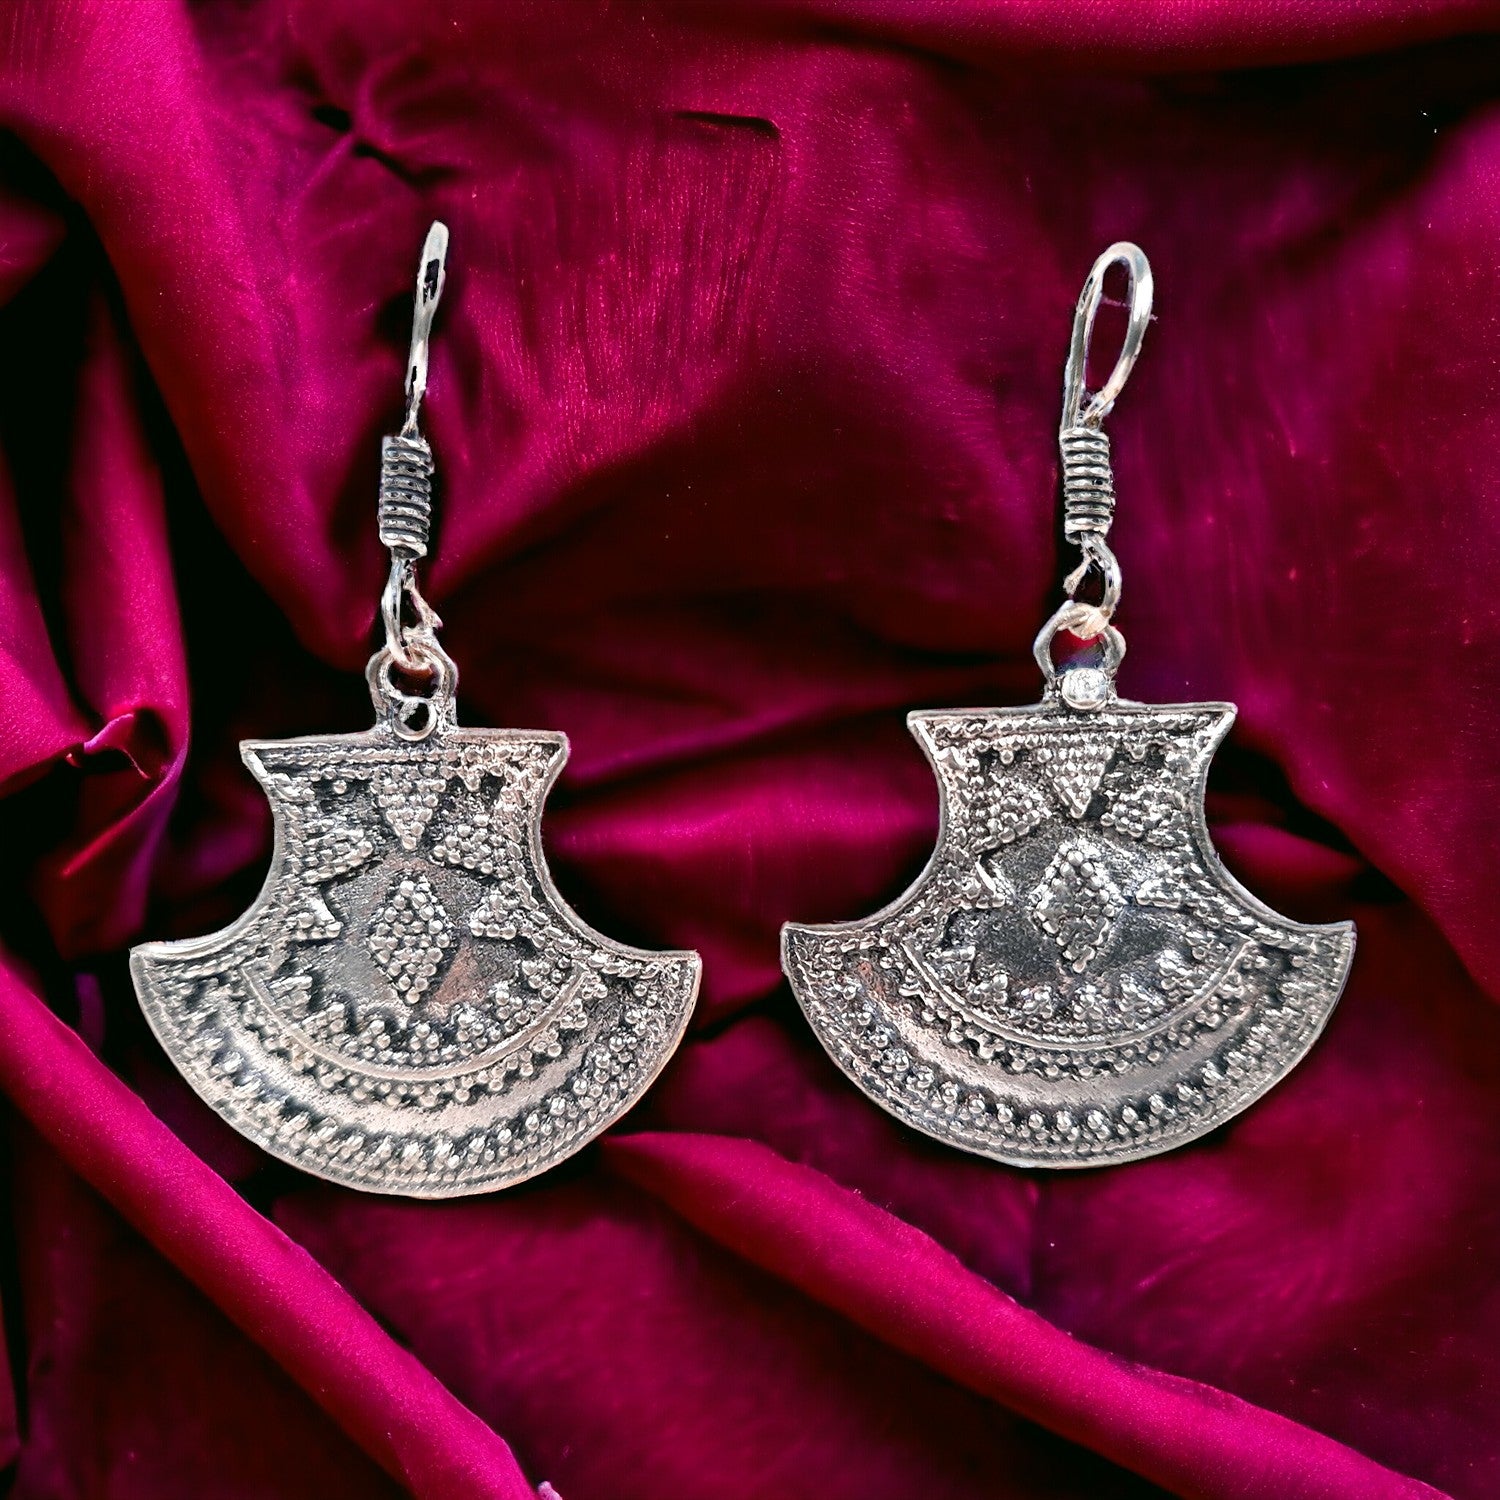 Earrings for Women & Girls | Dangler Earrings | Latest Stylish Fashion Jewellery | Gift for Her, Friendship Day, Valentine's Day Gift - Apkamart